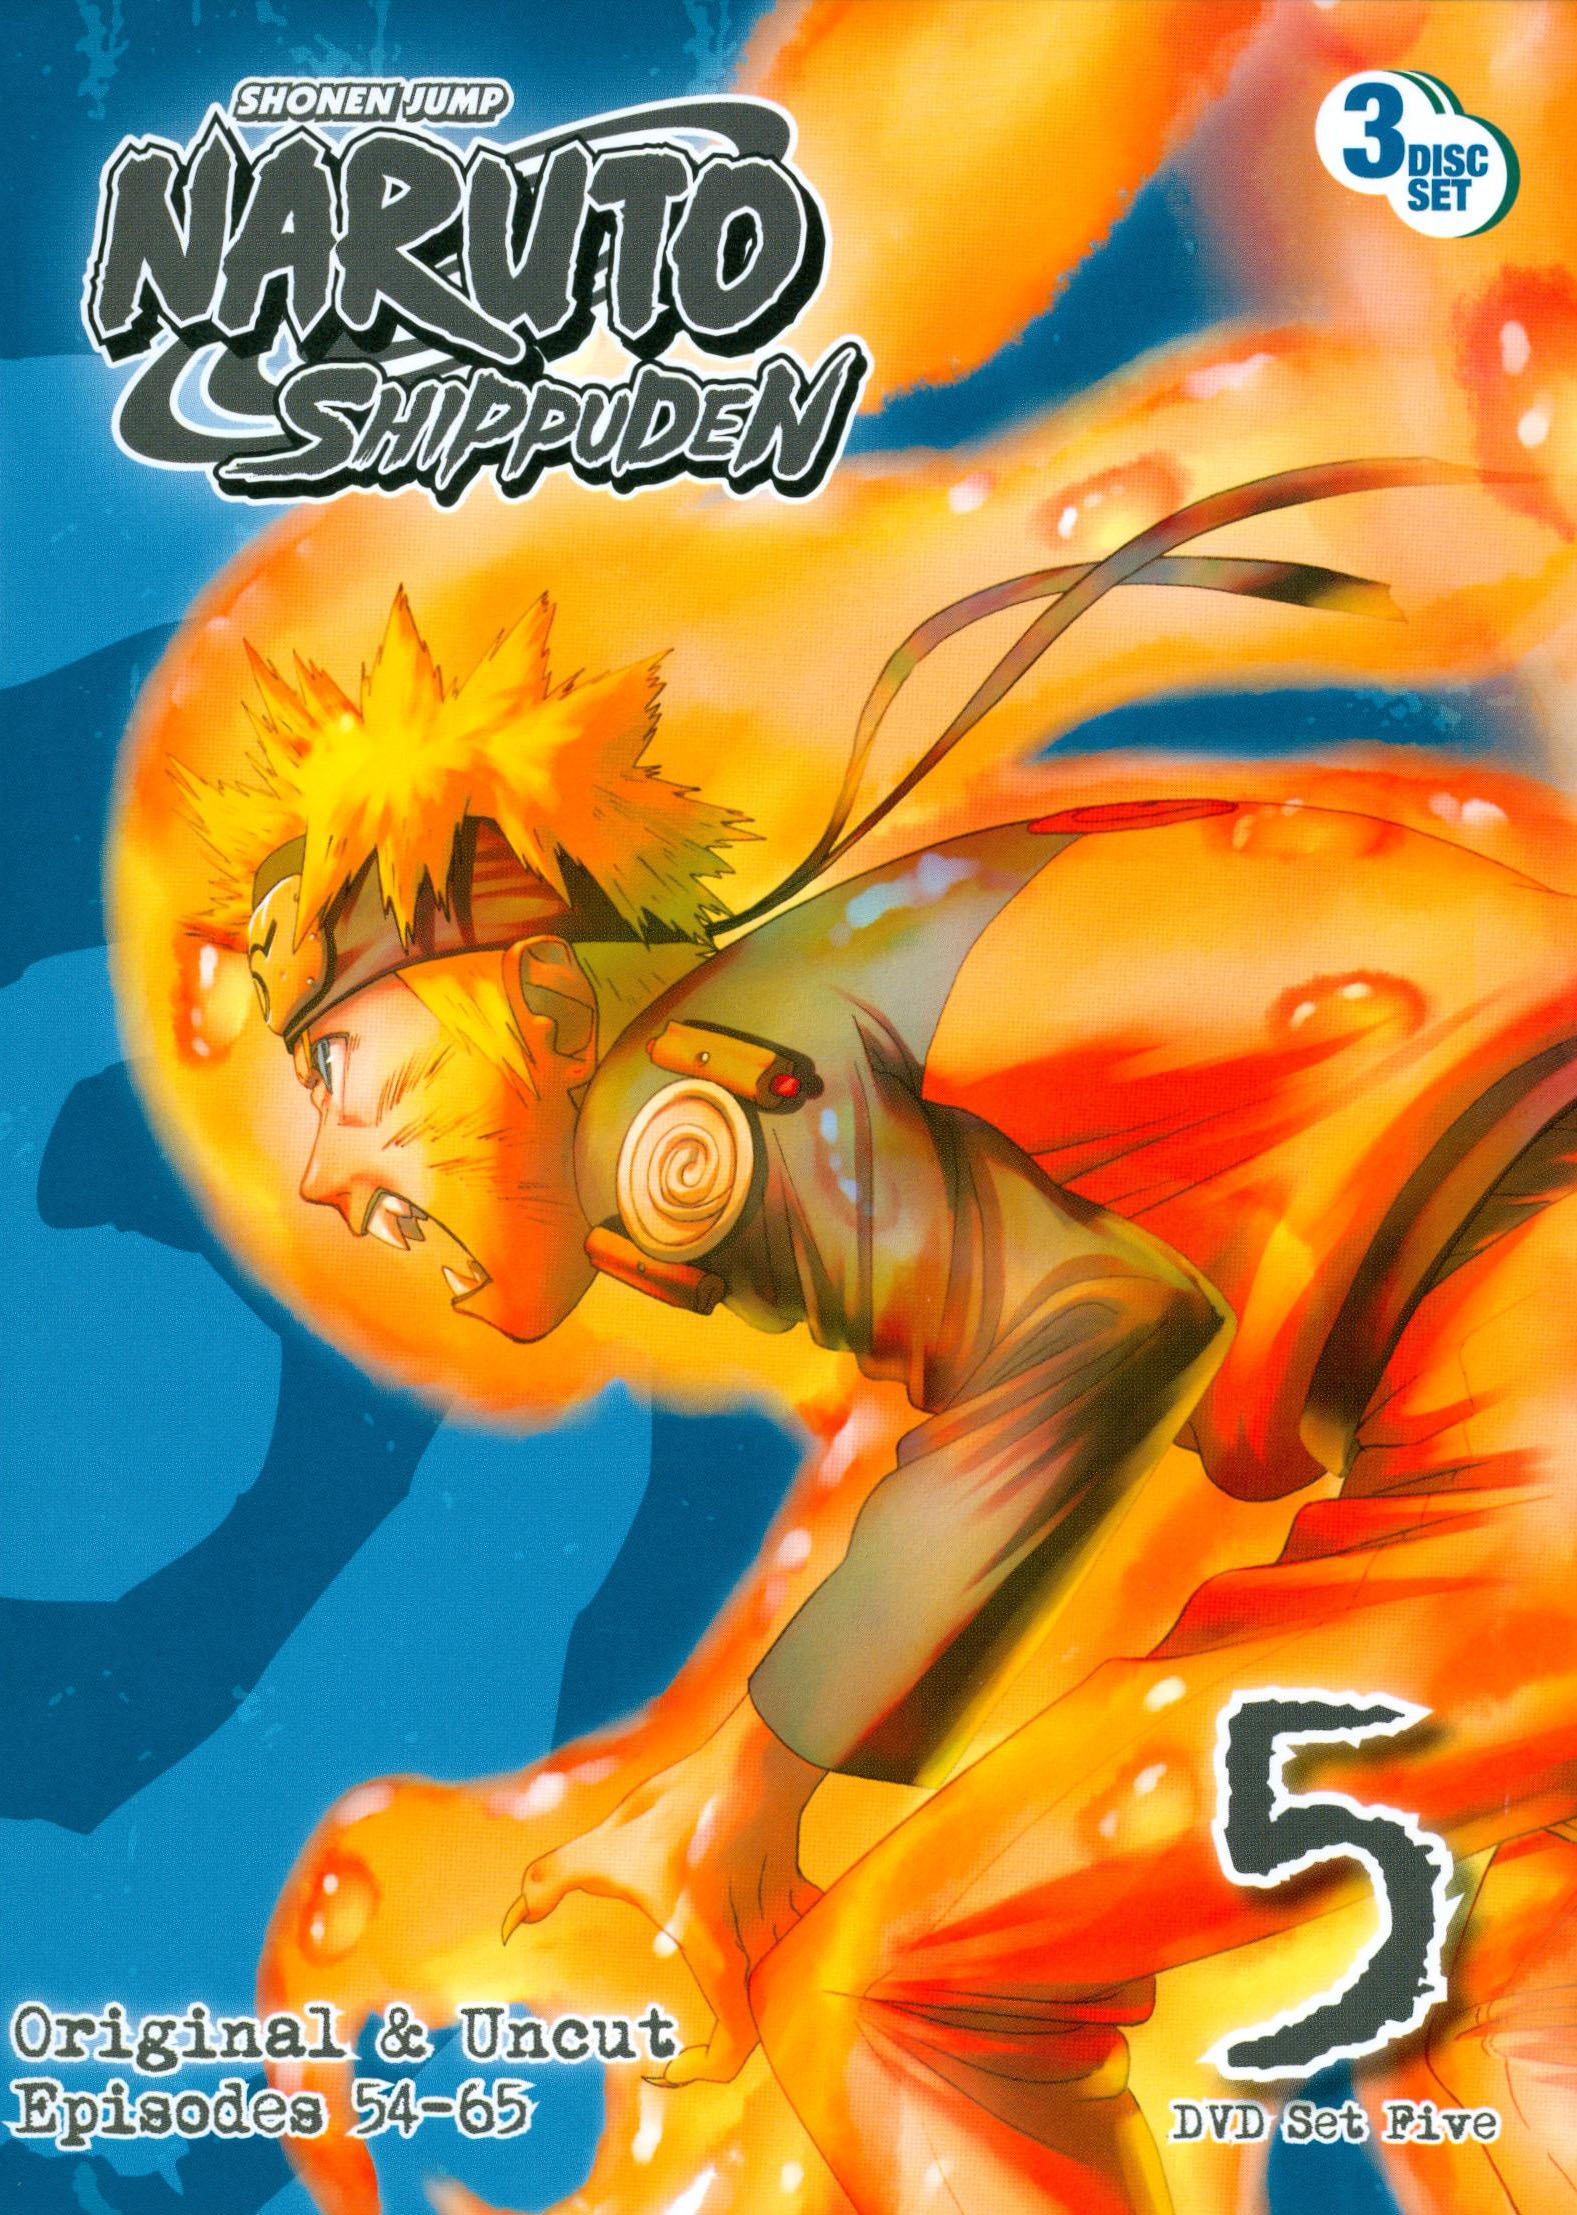 Box 08 Naruto 5 Discos - Volumes 36,37,38,39 & 40 - PlayArte - Elite Games  - Compre na melhor loja de games - Elite Games